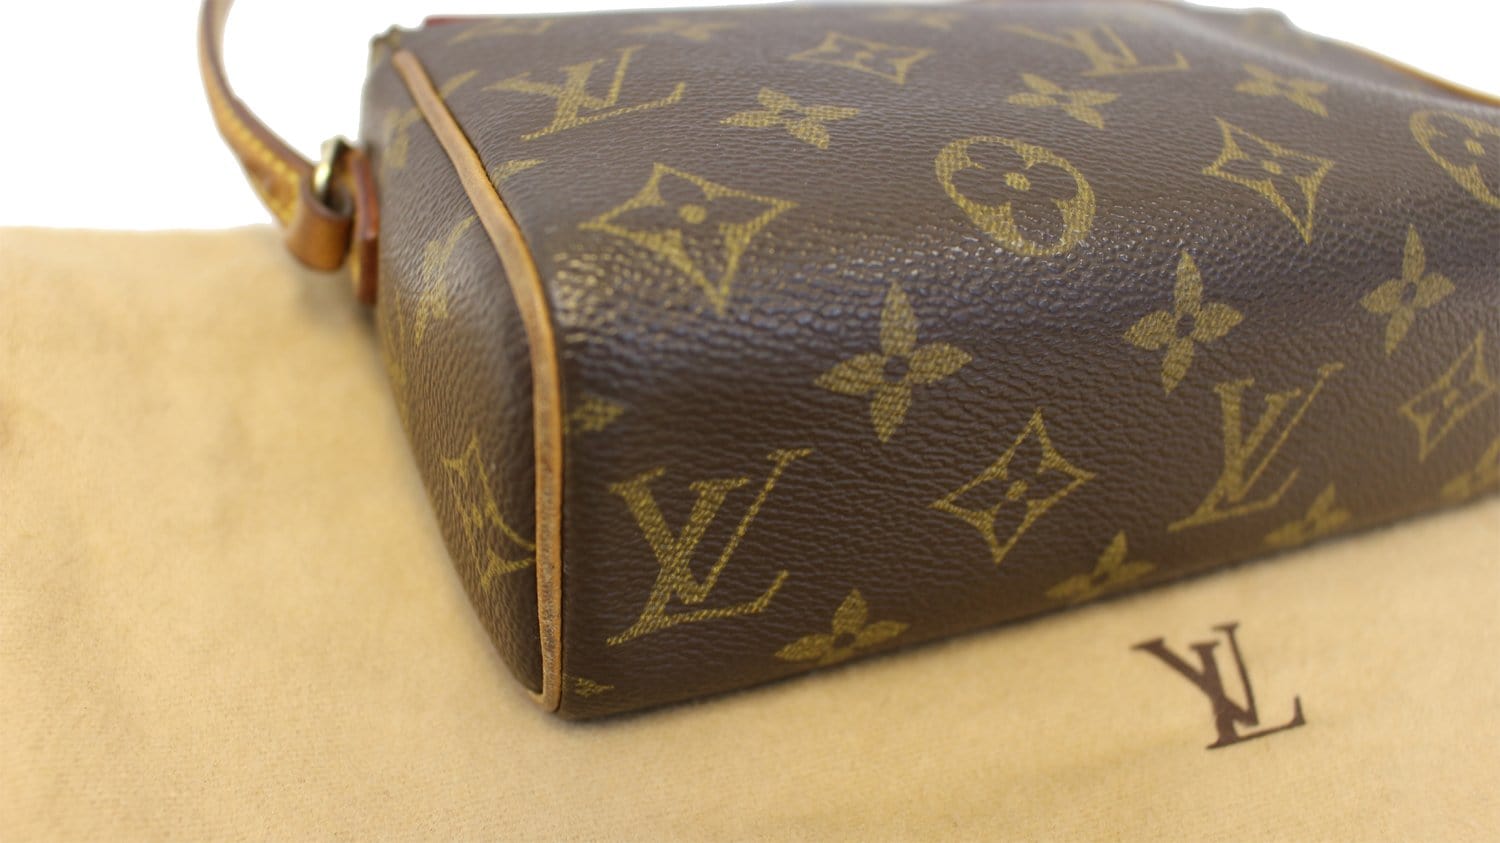 Louis Vuitton Monogram Recital Bag - Consigned Designs